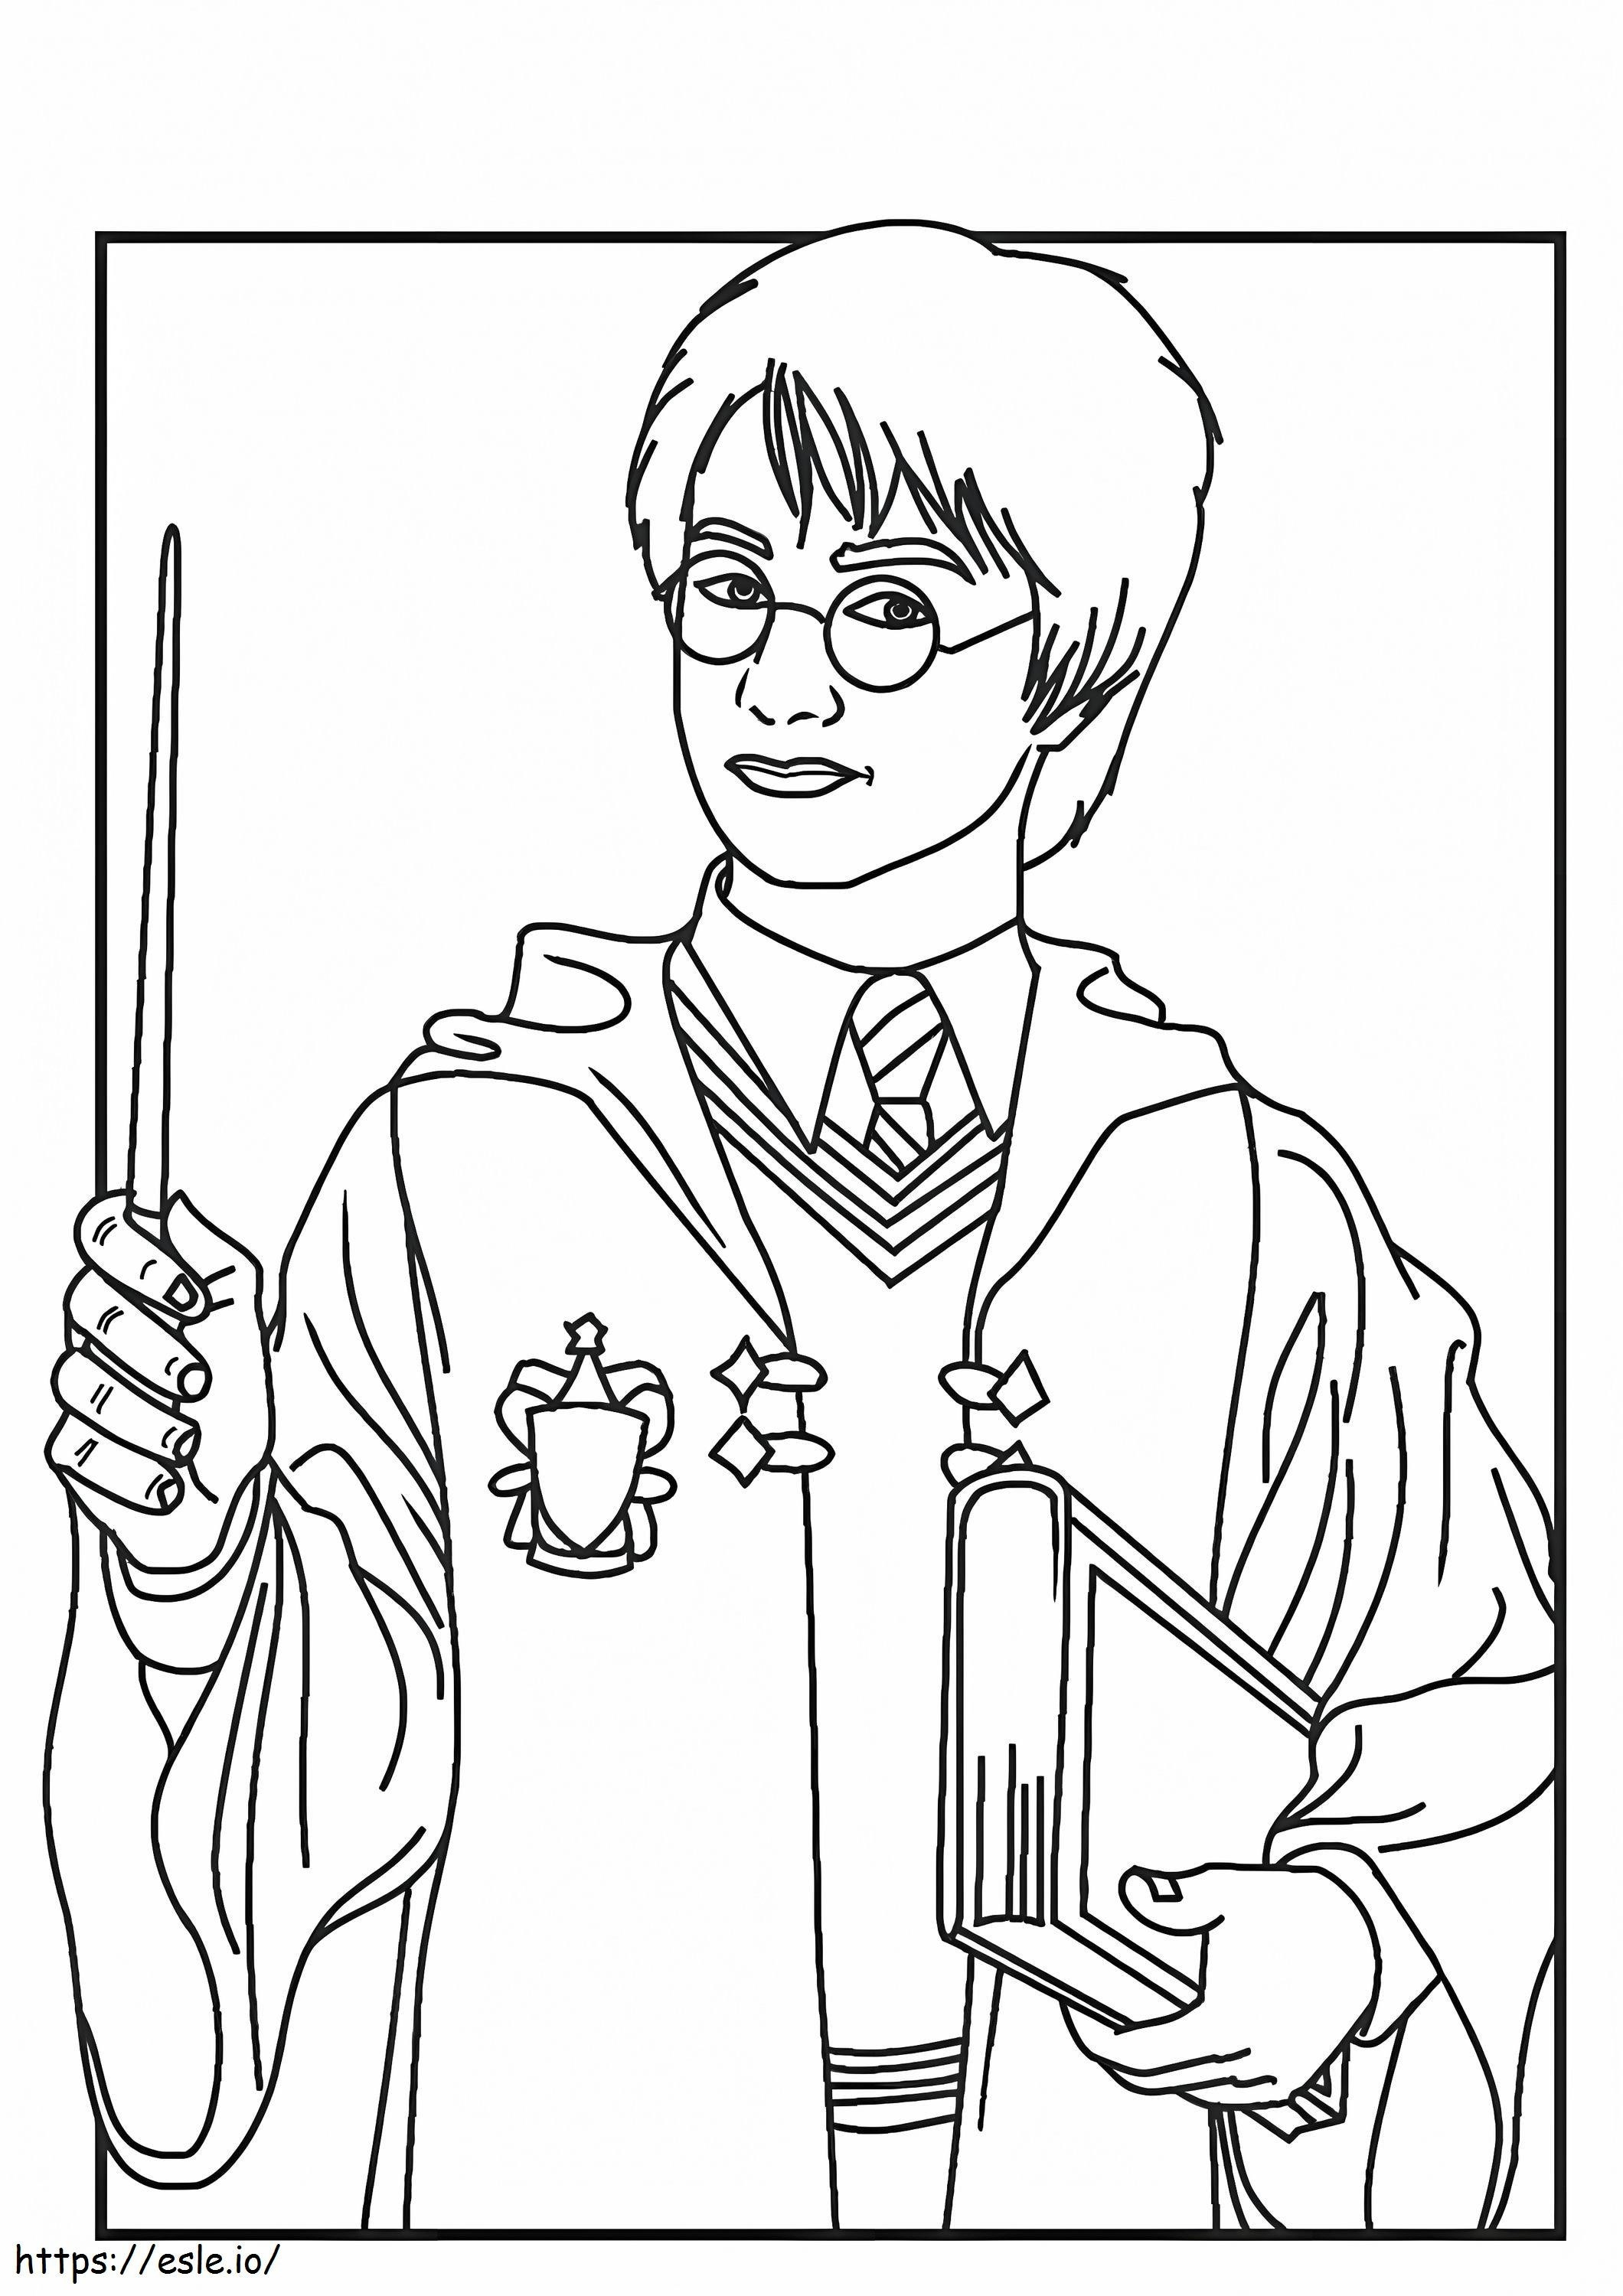 Harry Potter ținând în mână o baghetă și o carte de colorat